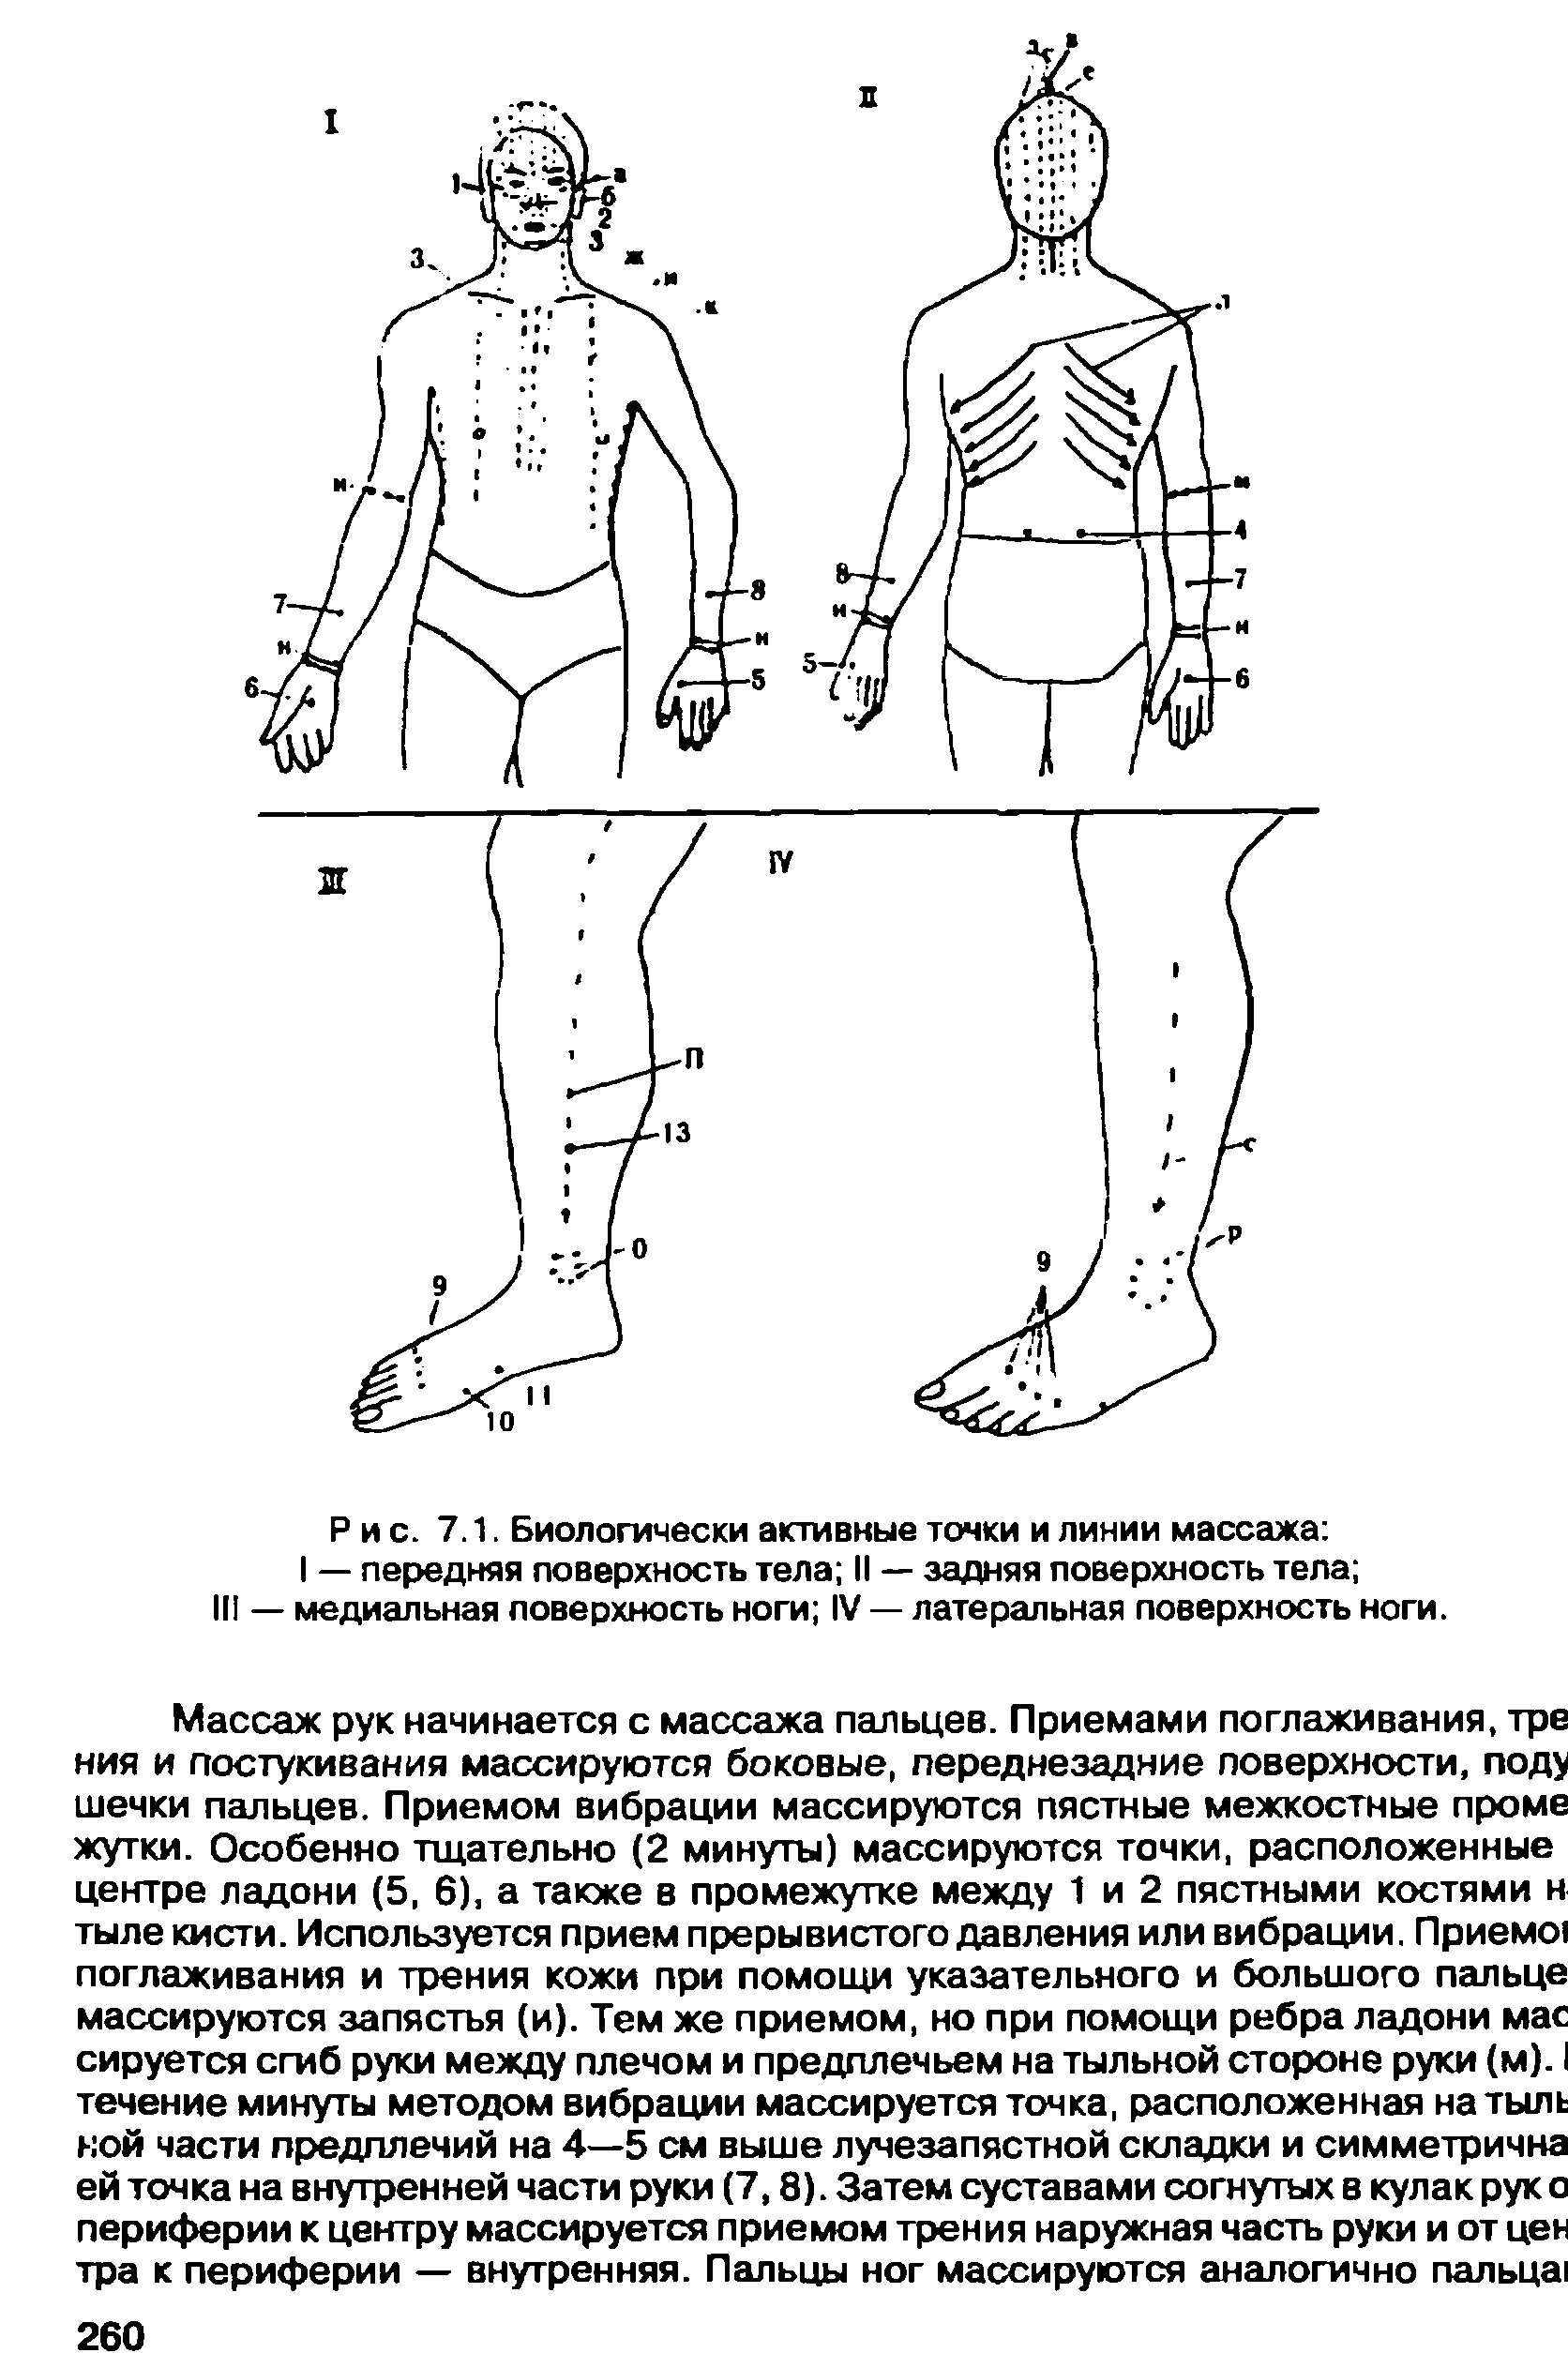 Рис. 7.1. Биологически активные точки и линии массажа I — передняя поверхность тела II — задняя поверхность тела III — медиальная поверхность ноги IV — латеральная поверхность ноги.